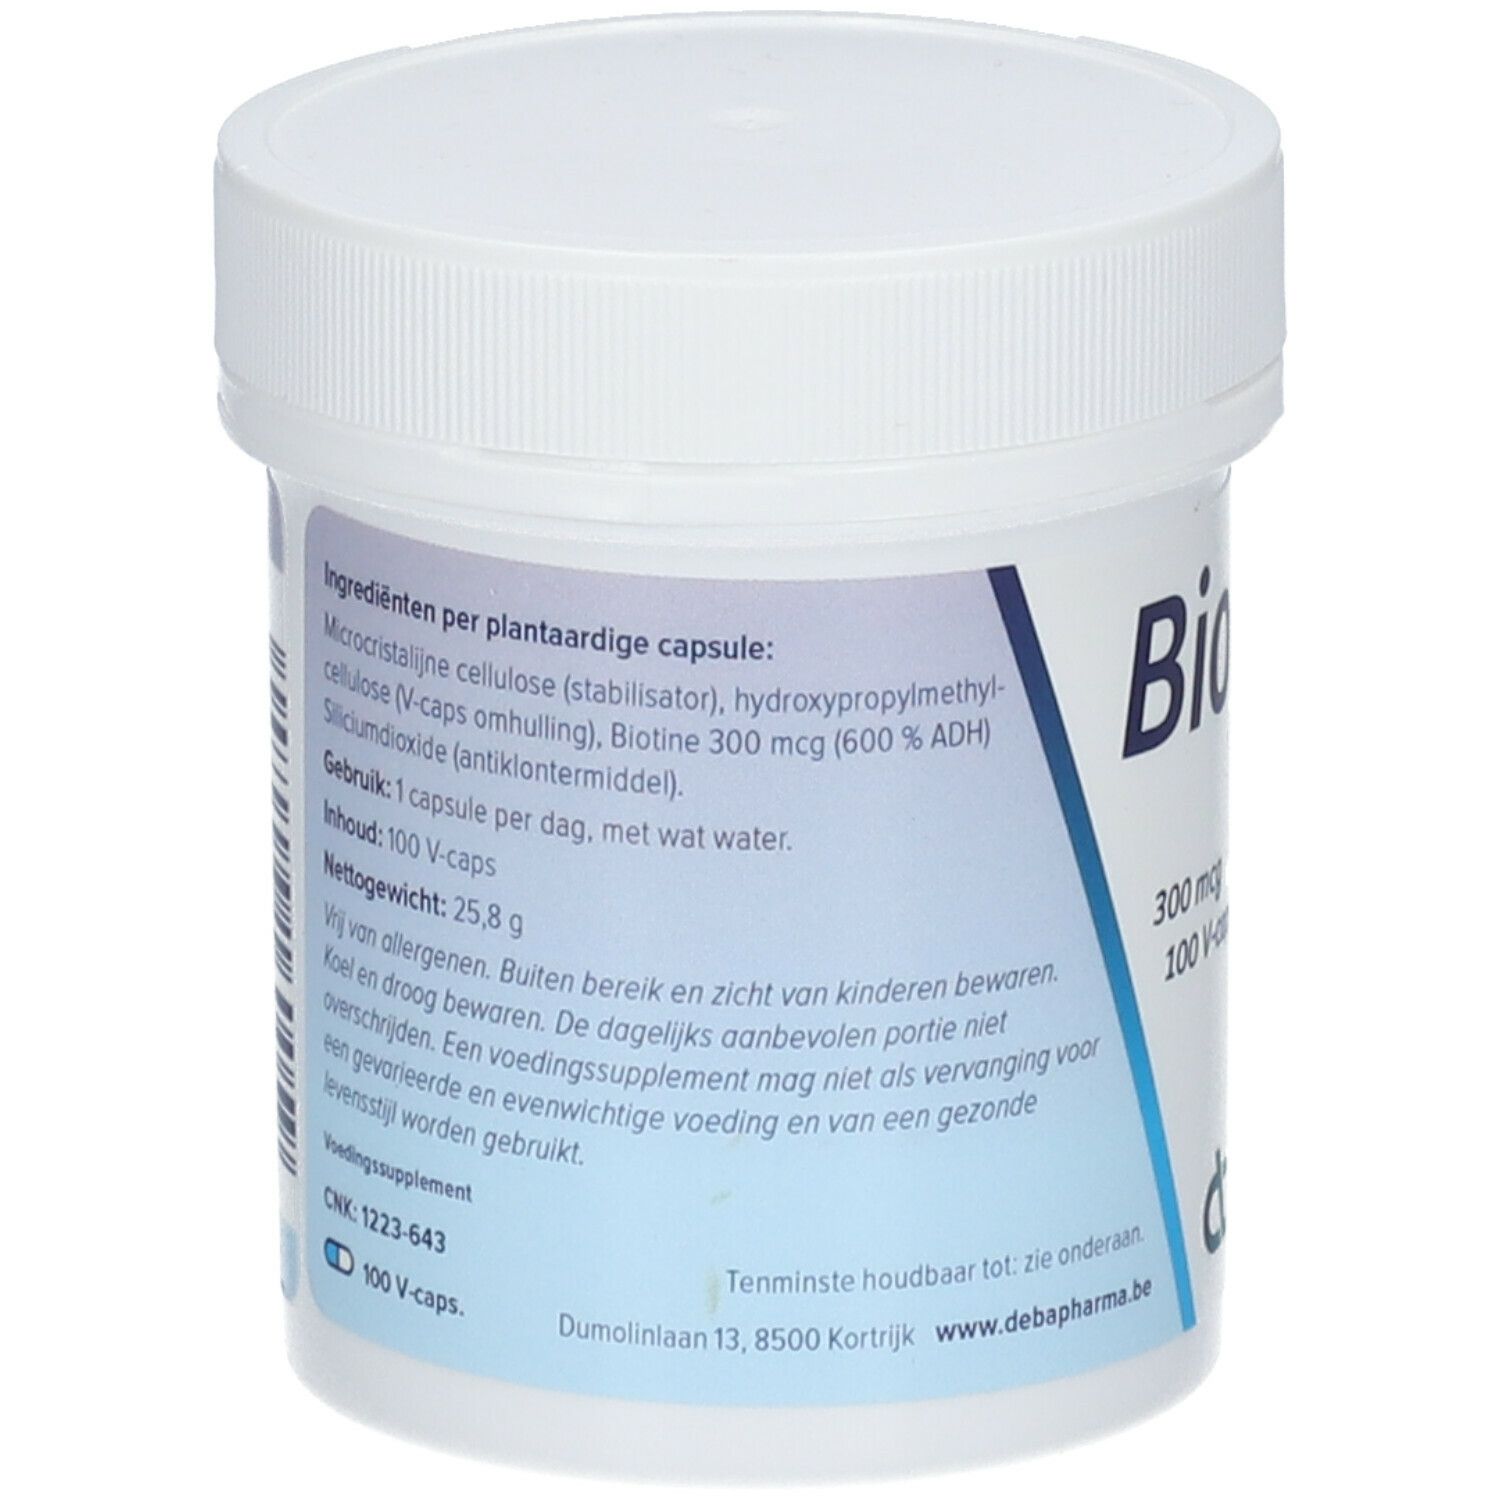 DeBa Pharma Biotine 300 µg